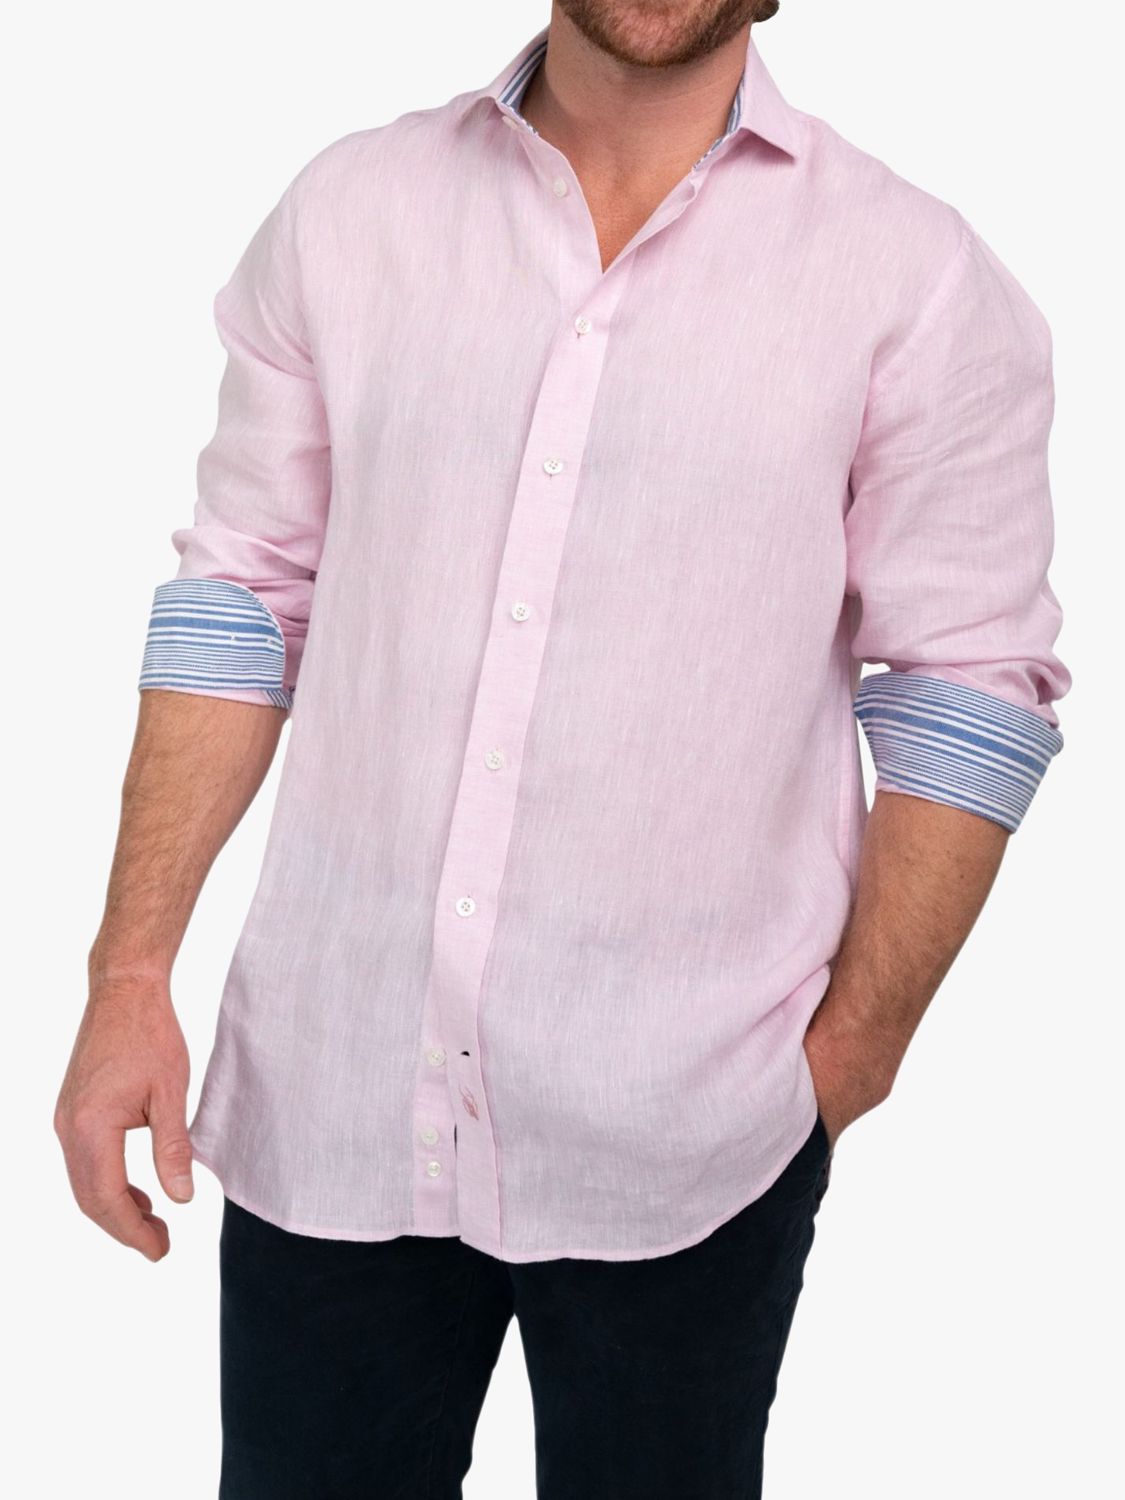 KOY Linen Shirt, Pink, S